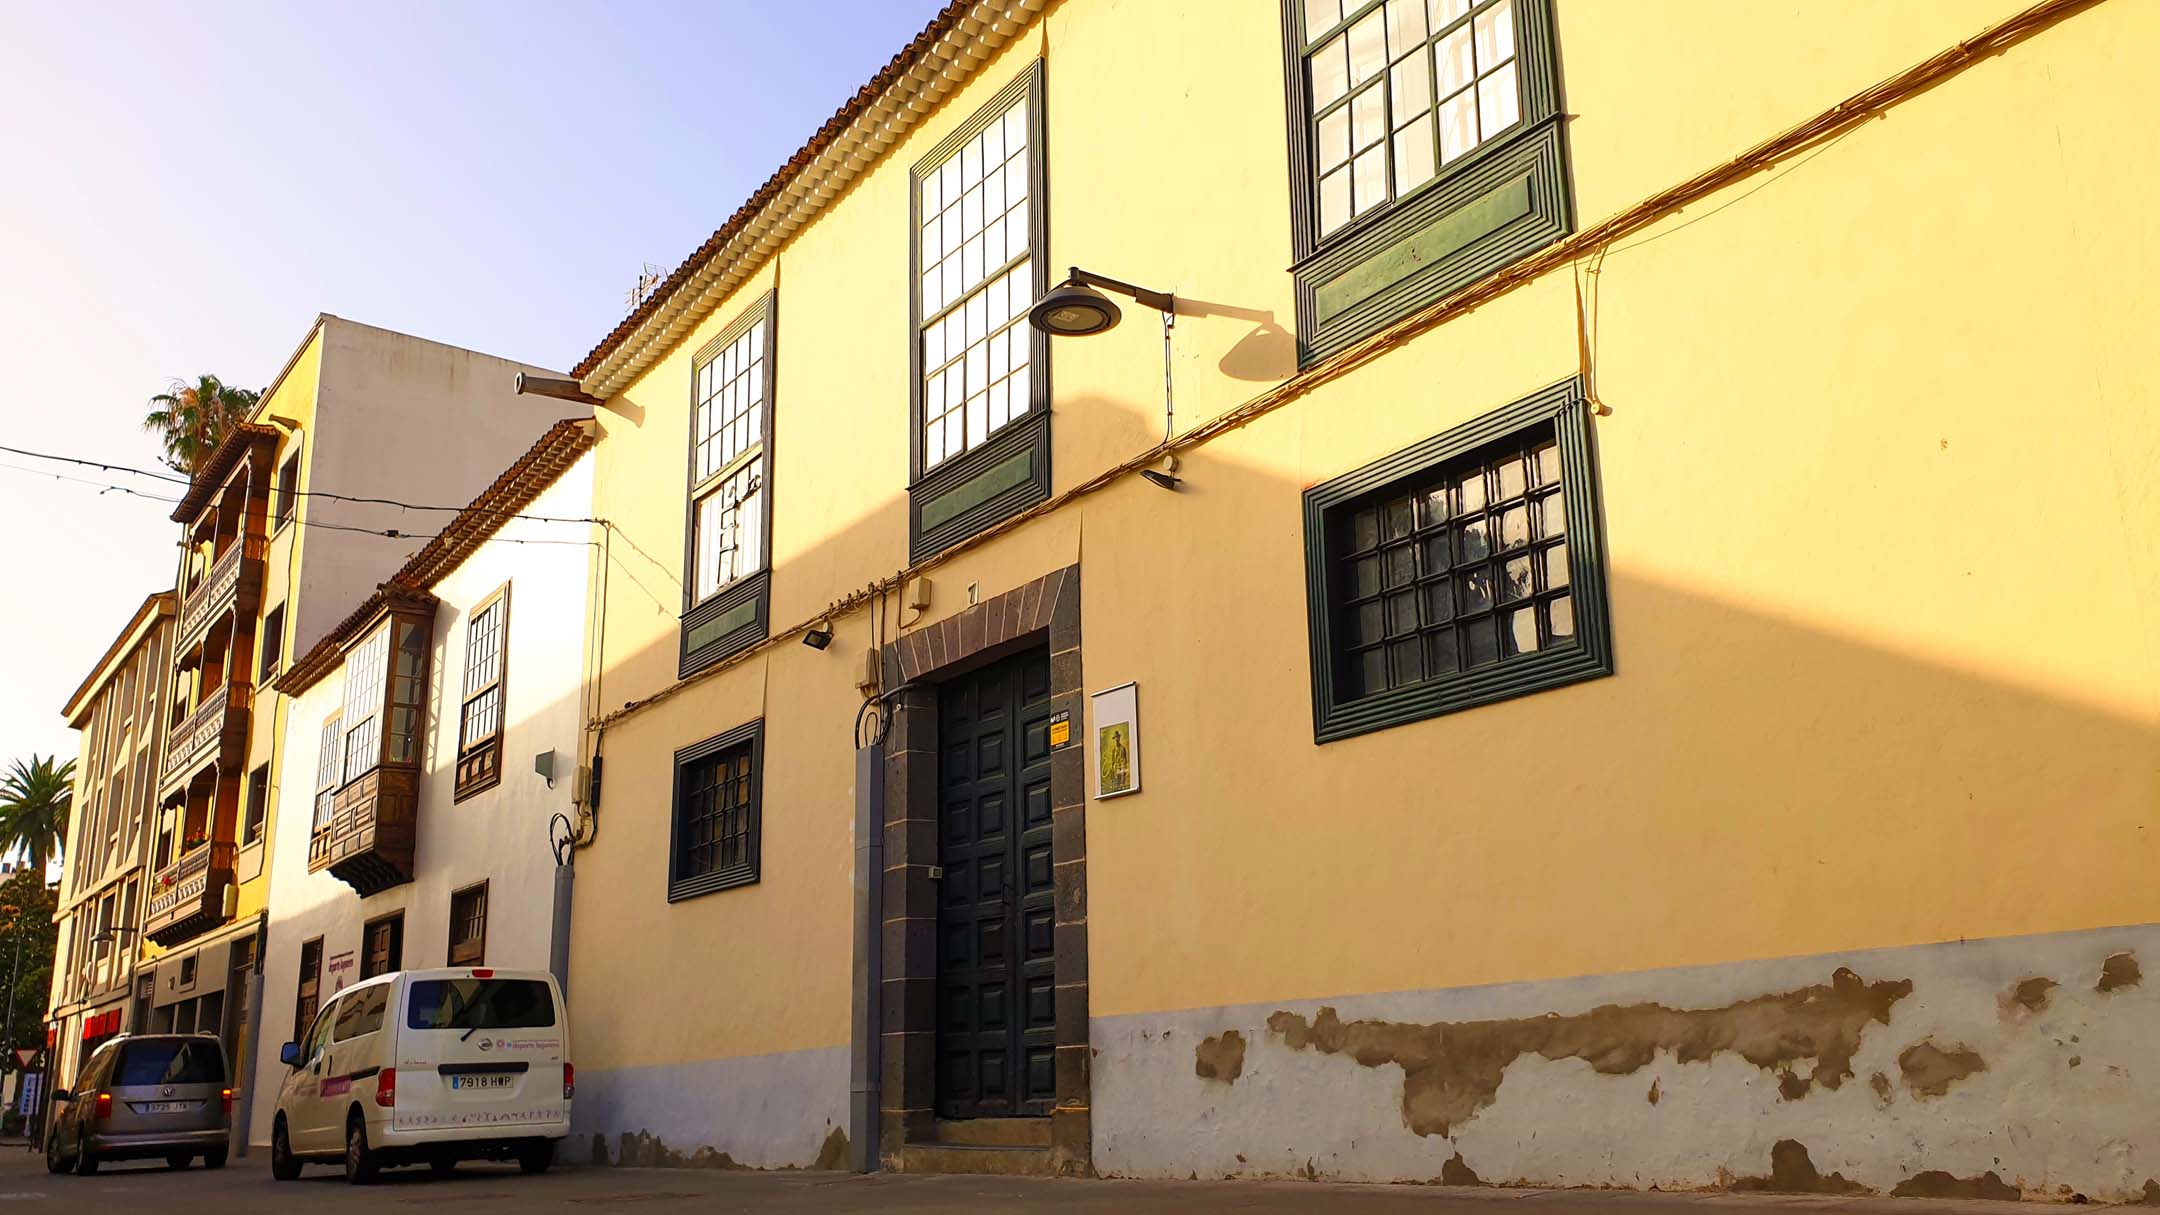 Casa Museo de Los Sabandeños